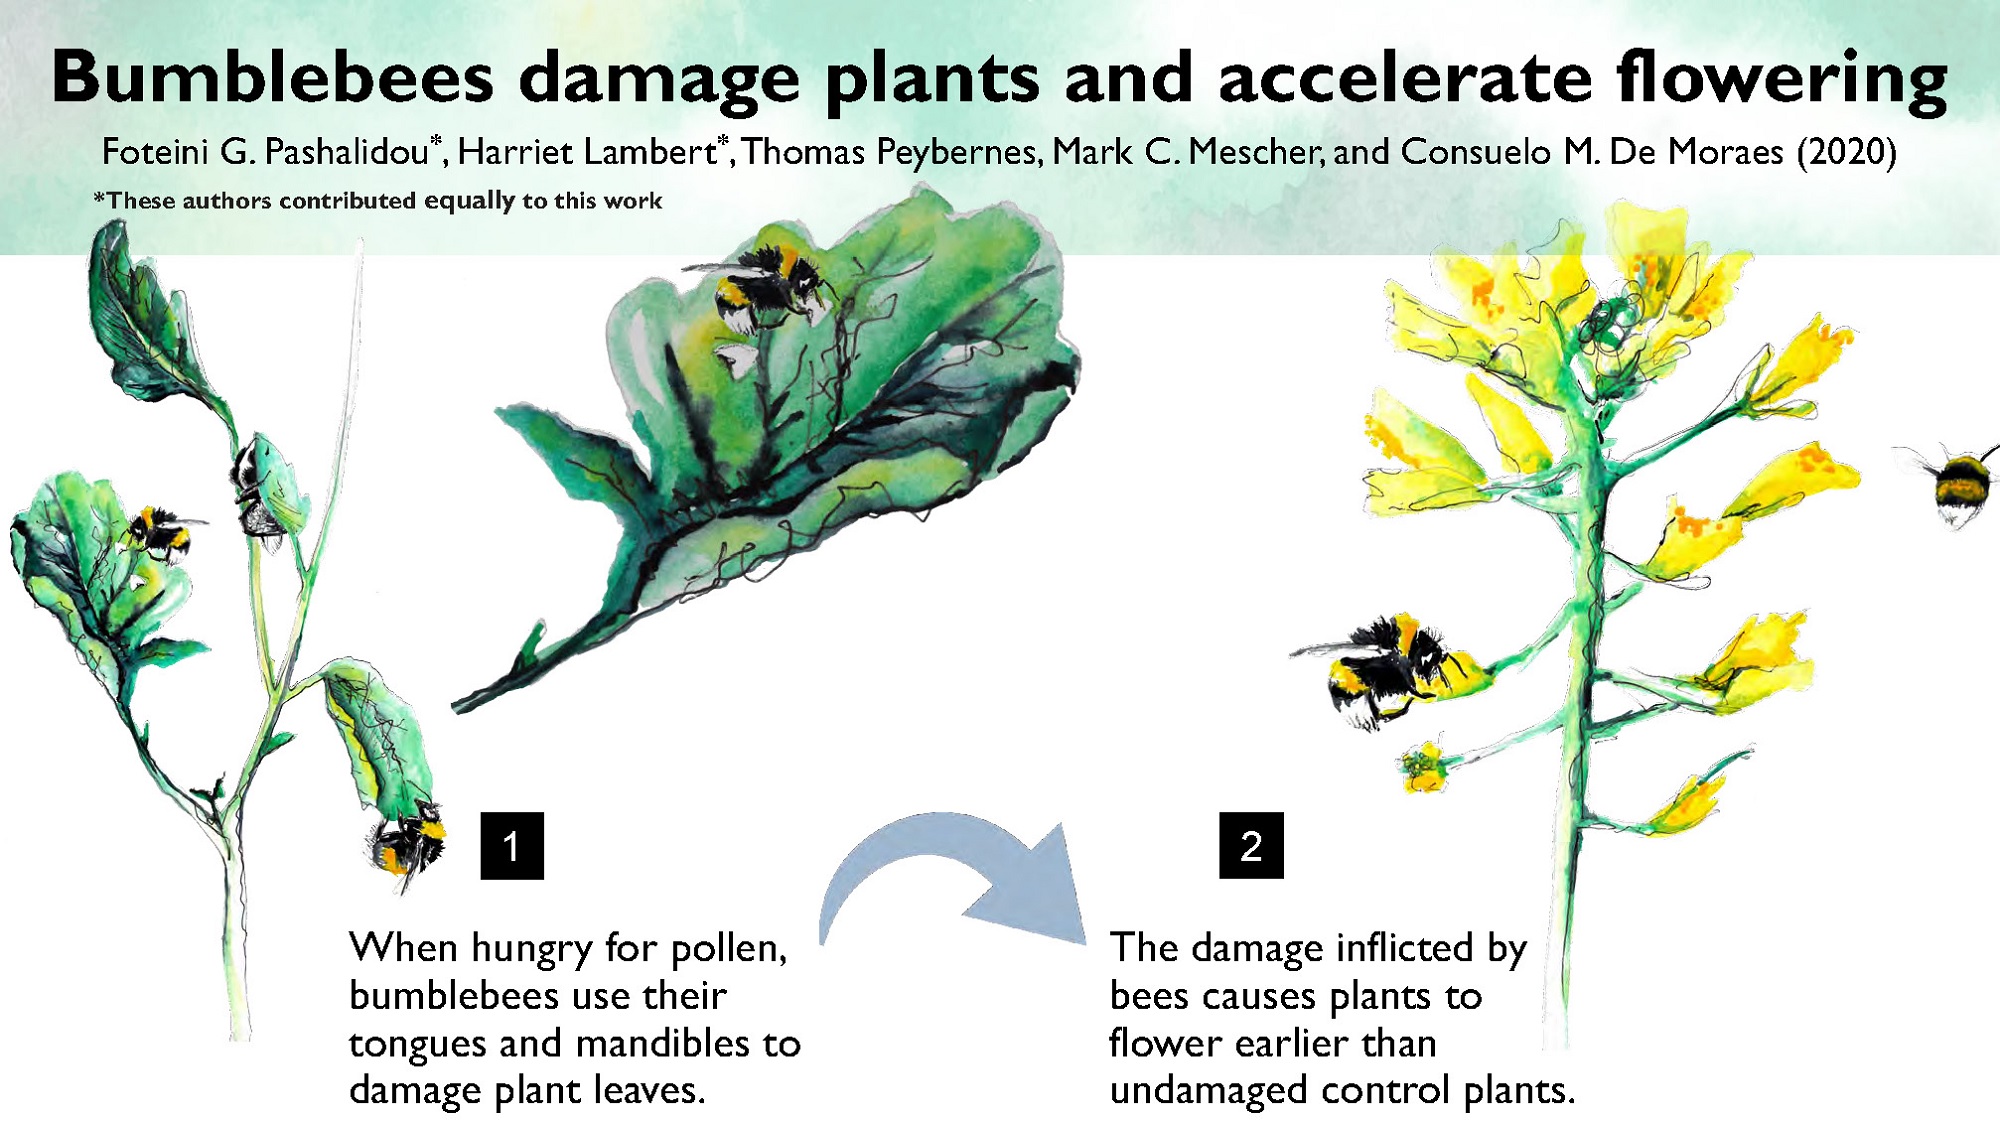 Bumblebees Bite Leaves of Flowerless Plants to Stimulate Earlier Flowering, Biology